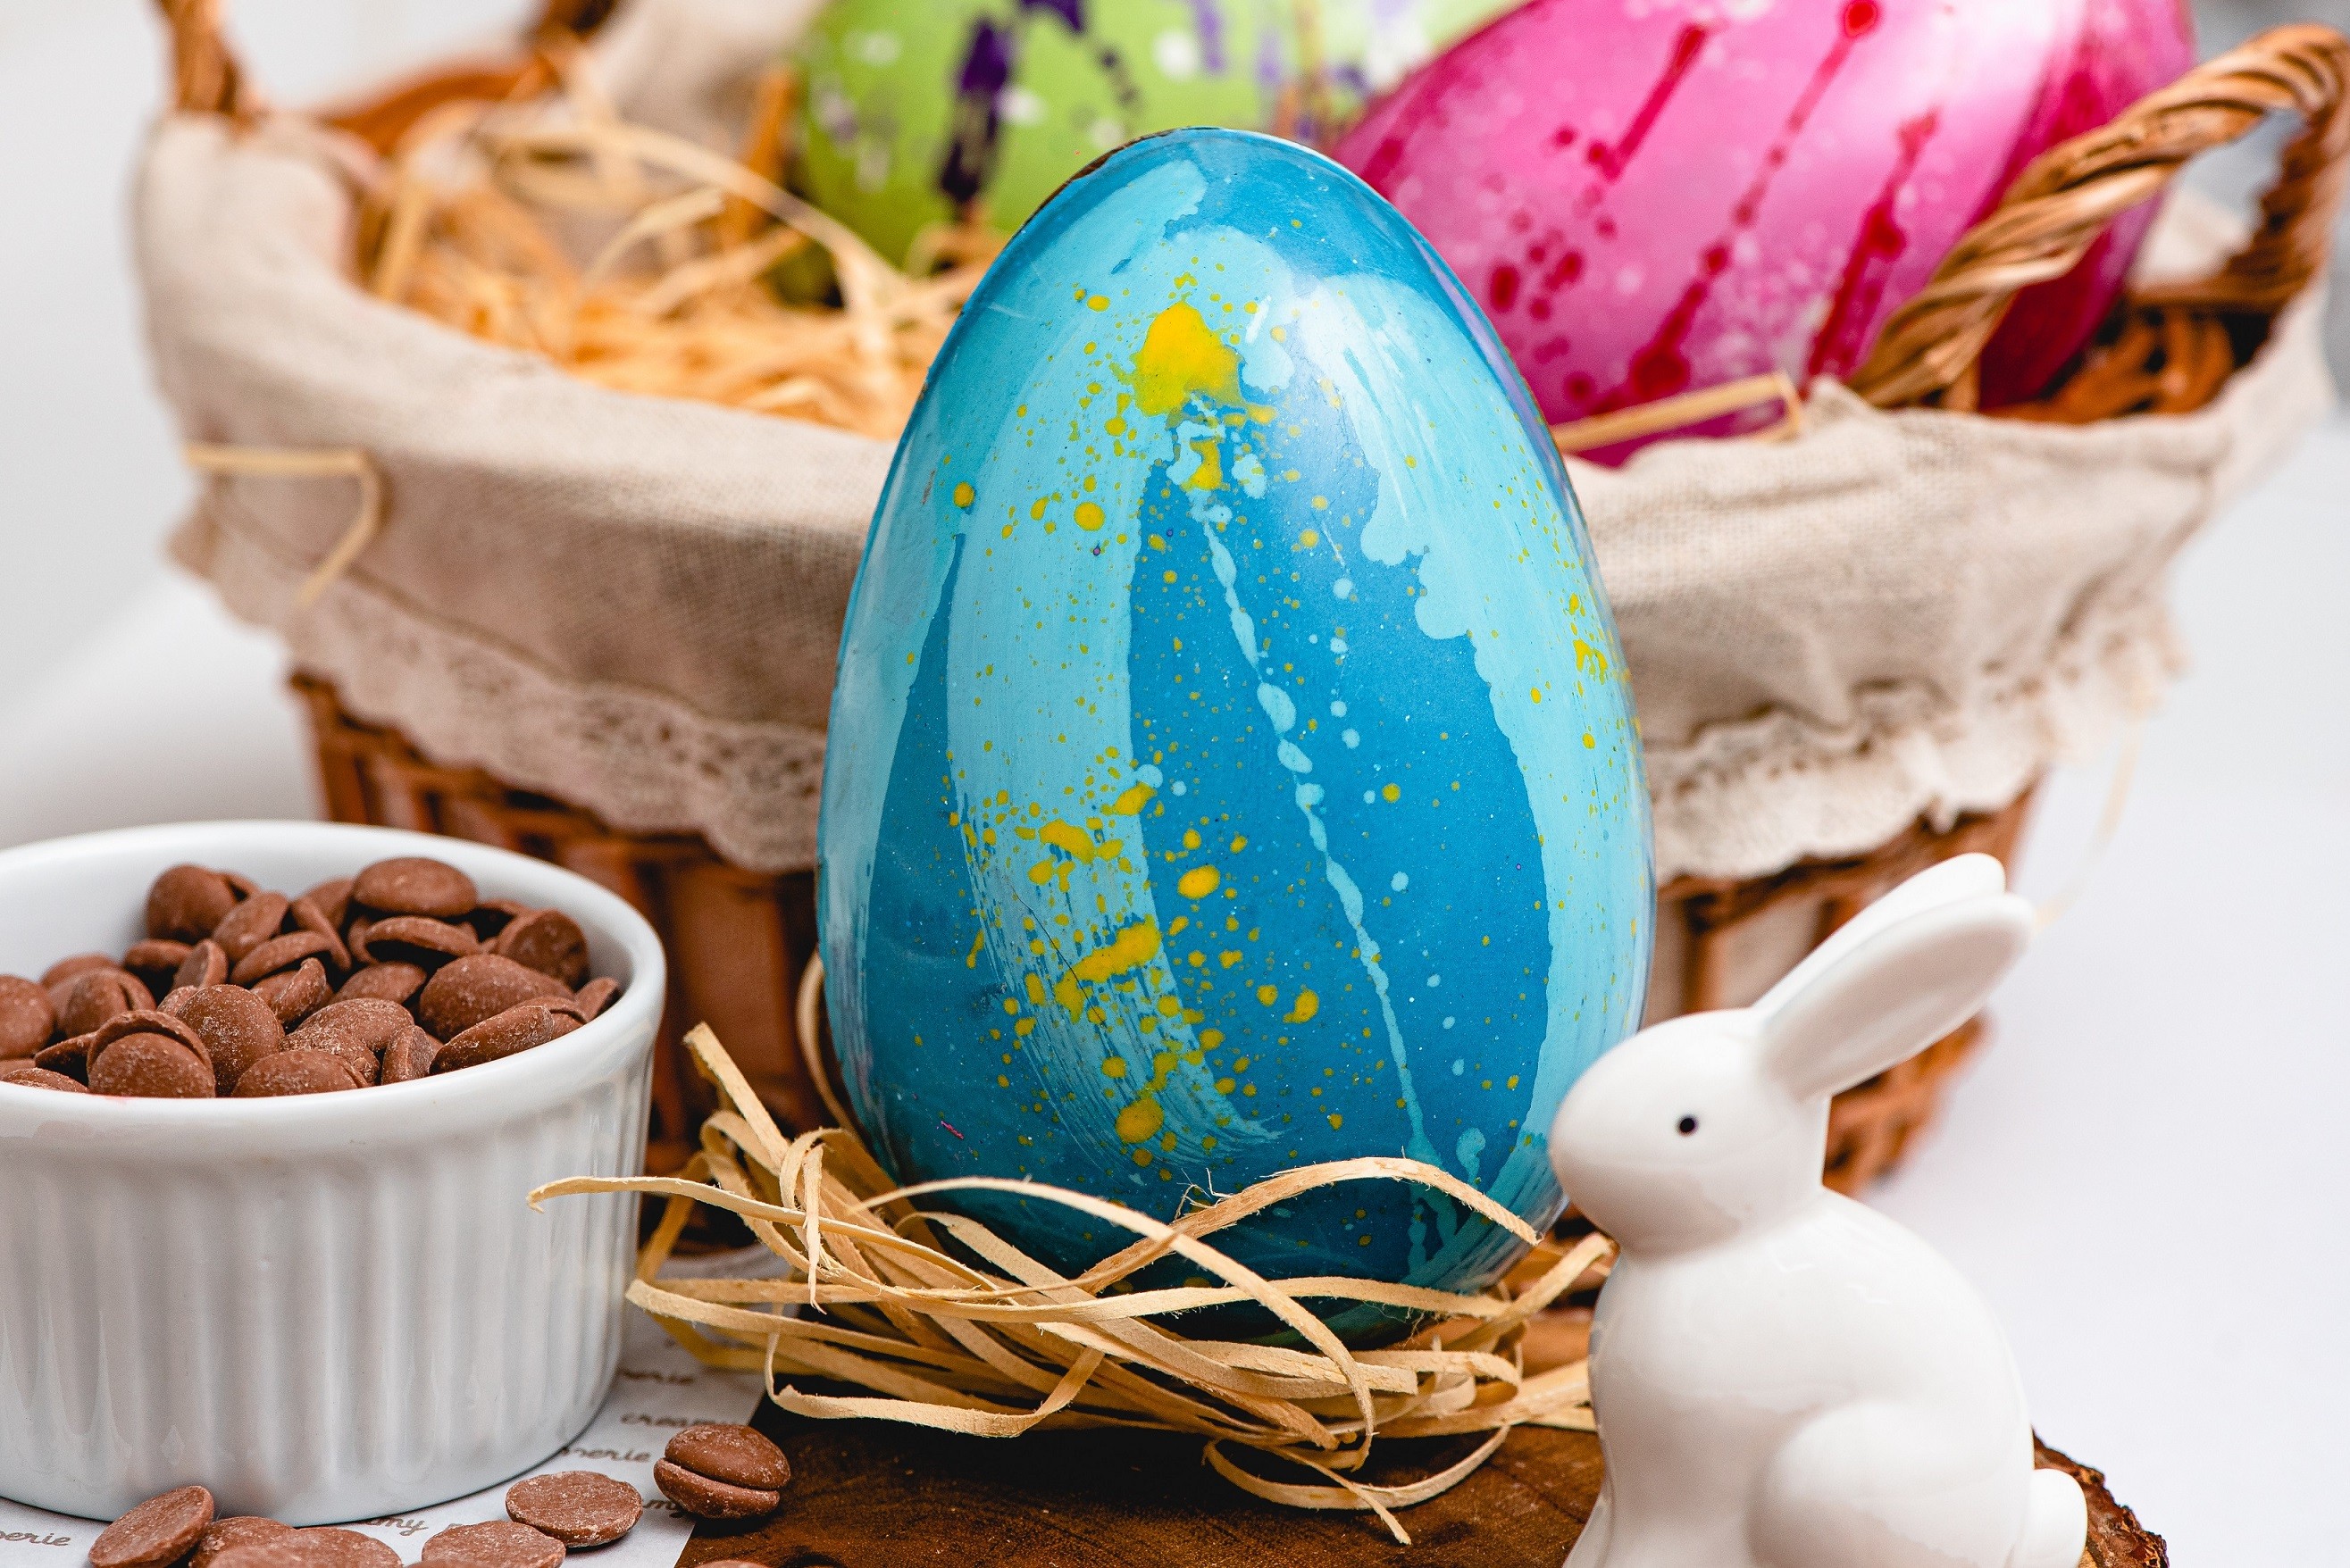 Especial Páscoa: 25 Ovos de Chocolate que valem a pena provar! (Foto: Divulgação)